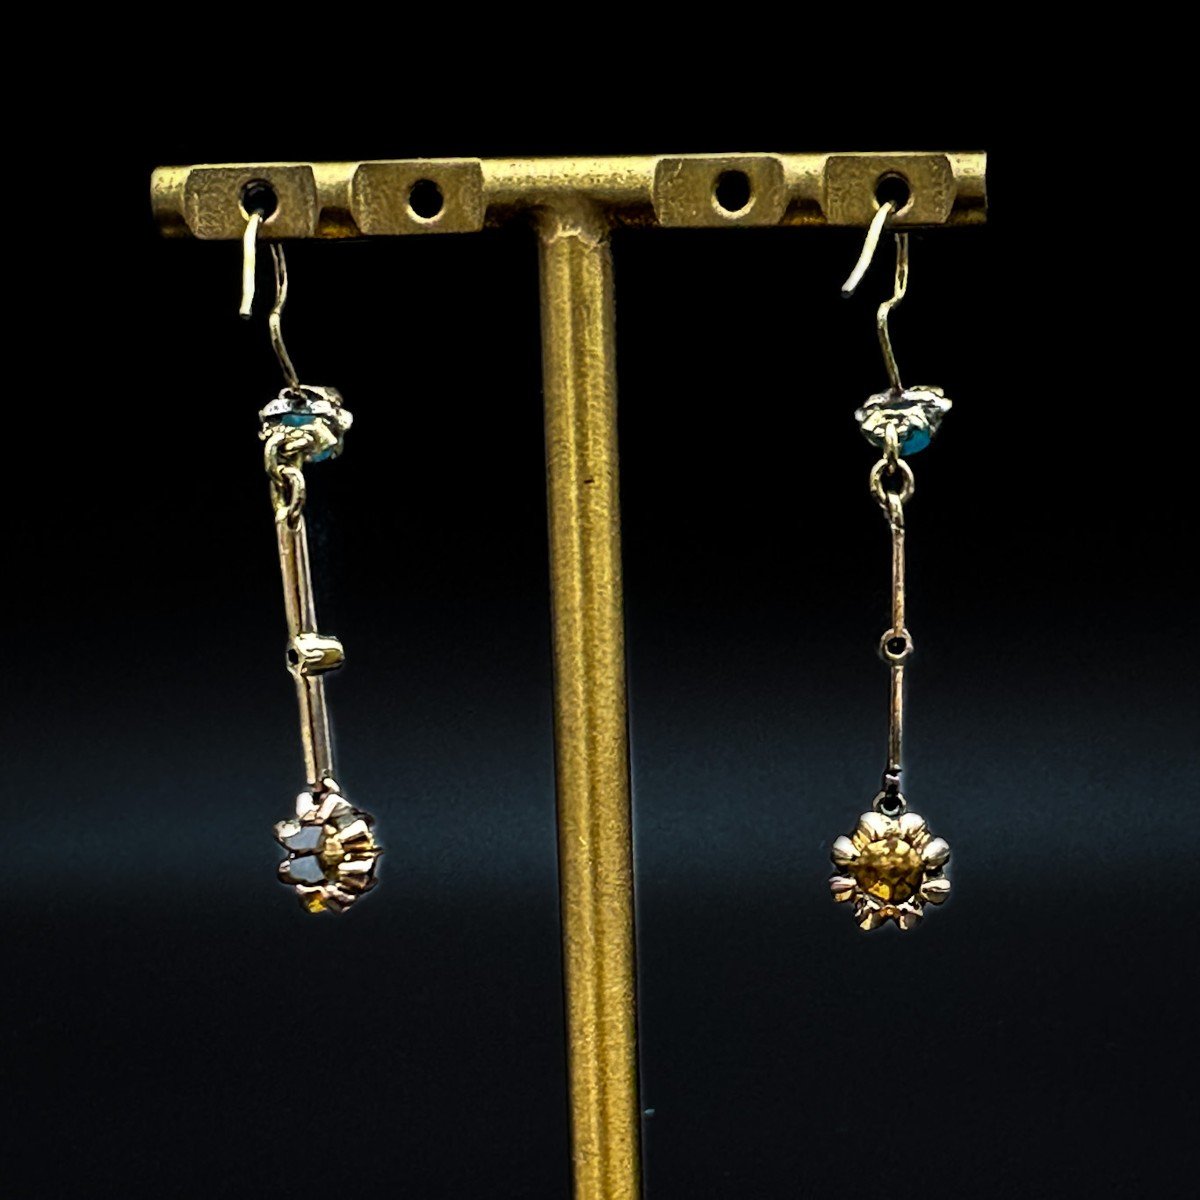 Napoleon III Pendant Earrings In 18k Yellow Gold, Diamonds And Turquoise-photo-4